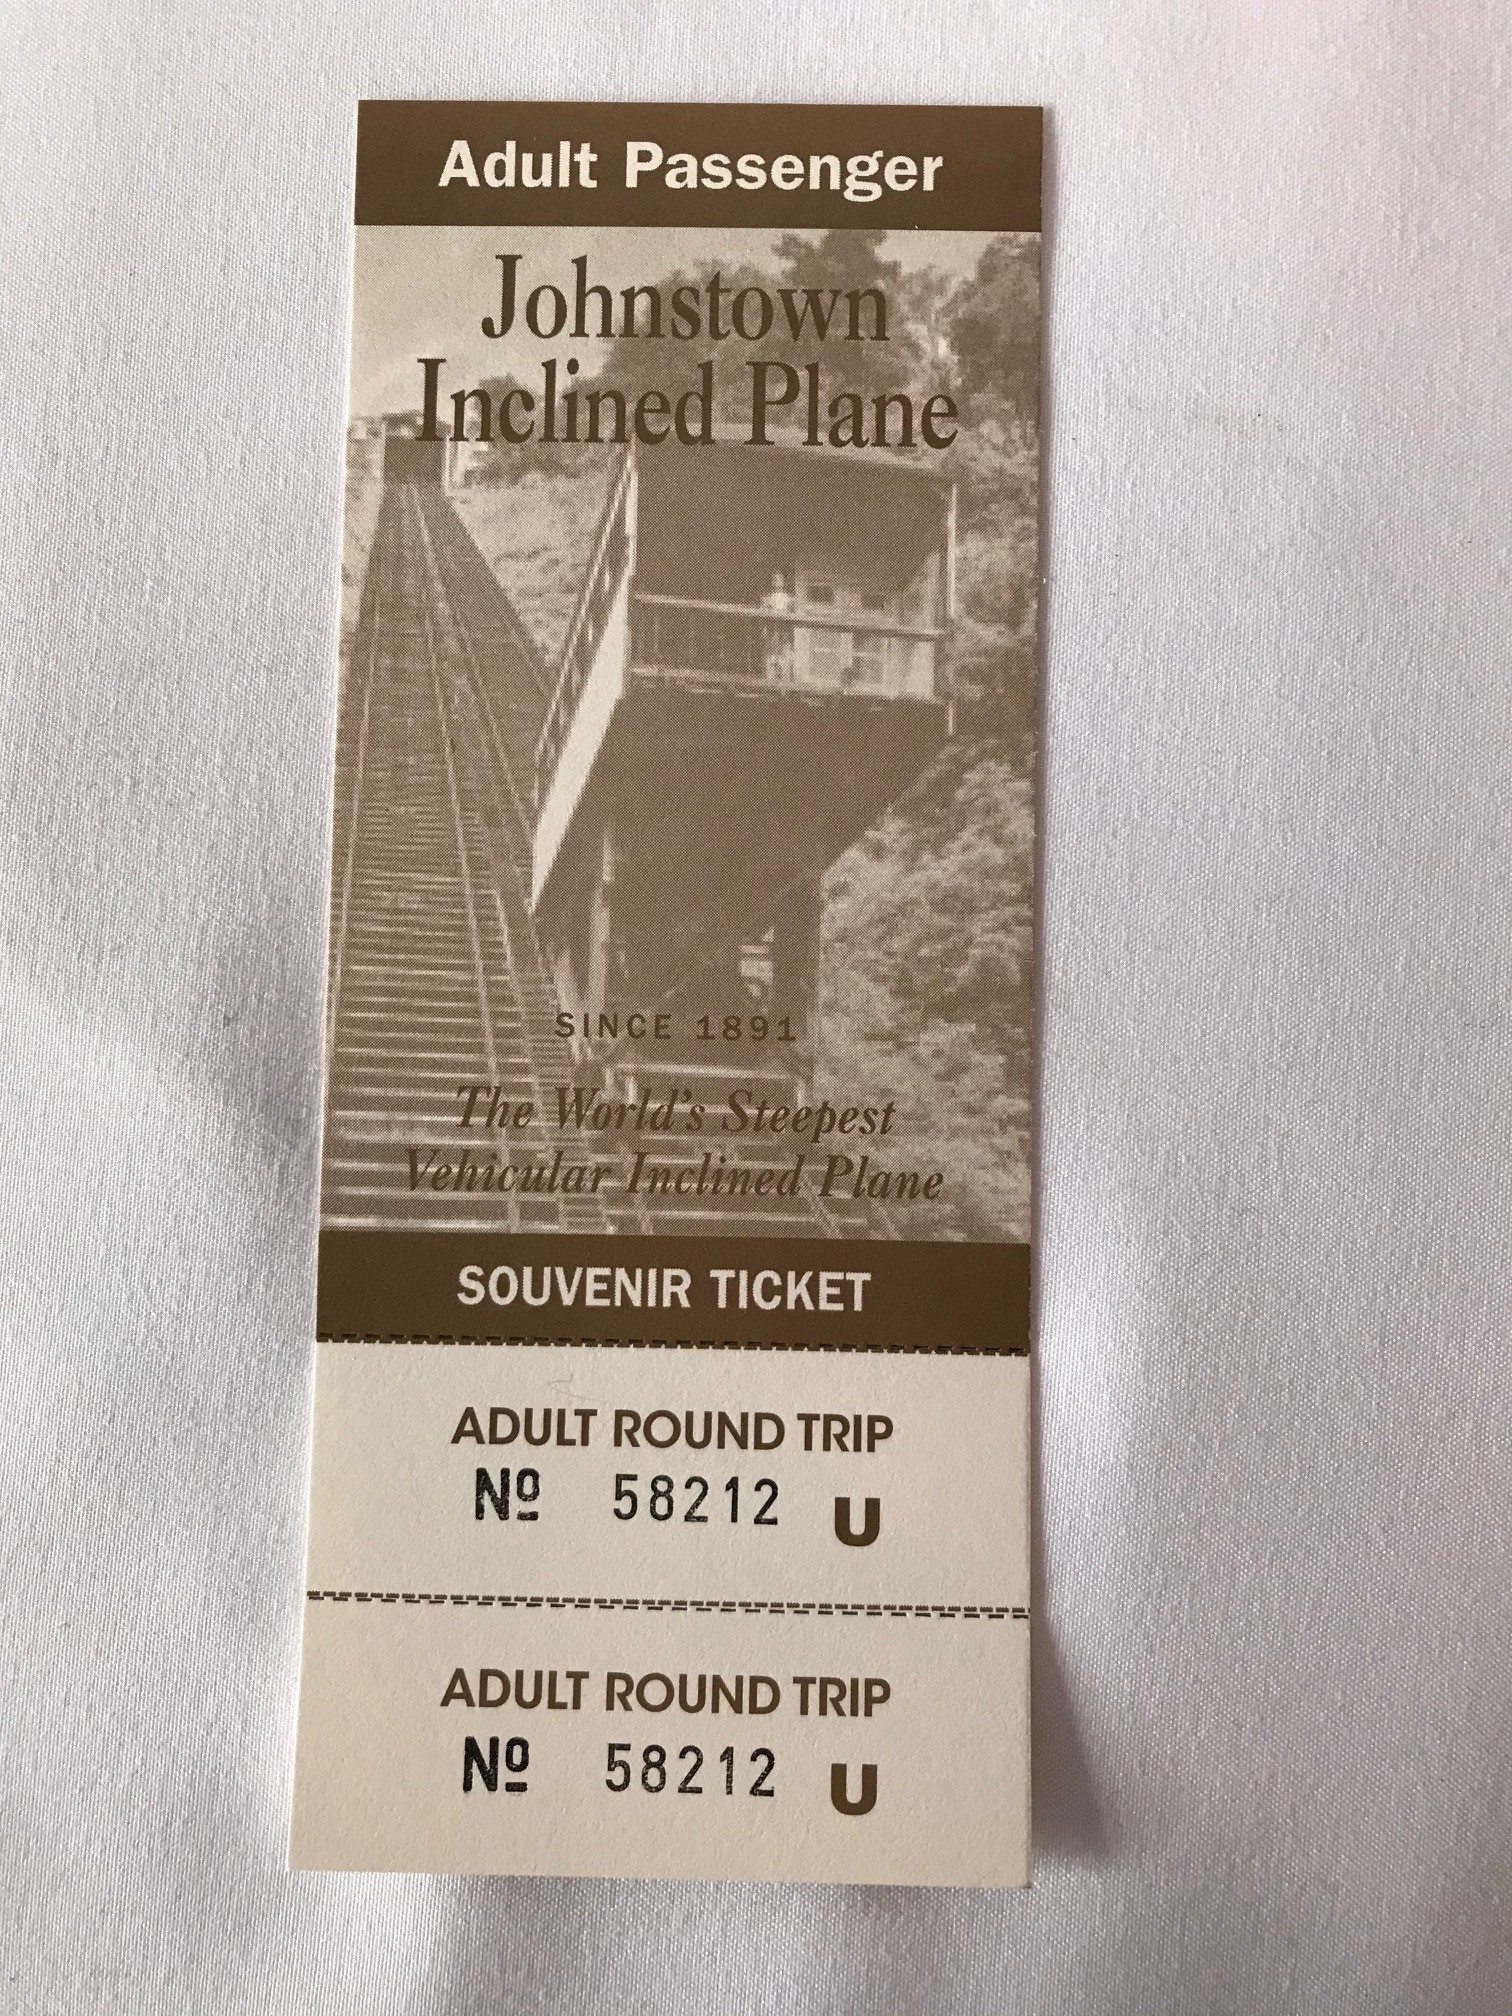 the round trip plane ticket